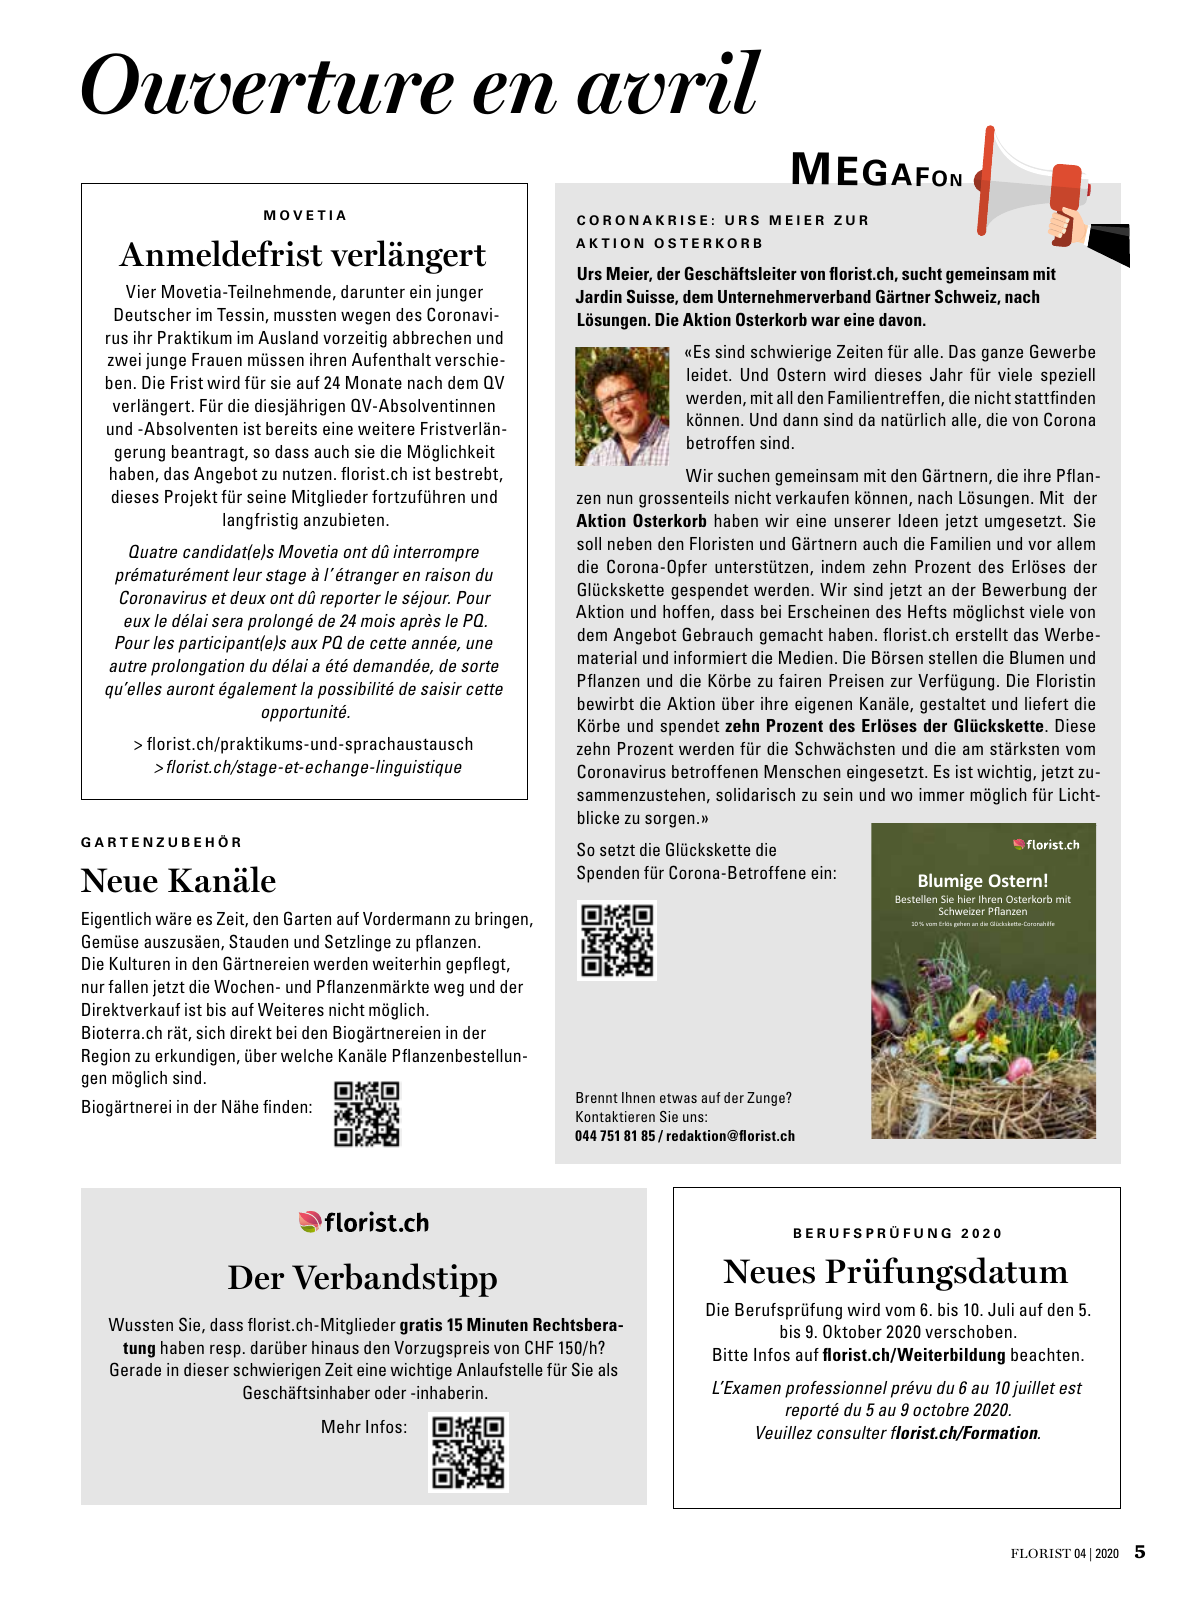 Vorschau Florist - Ausgabe April 2020 Seite 3